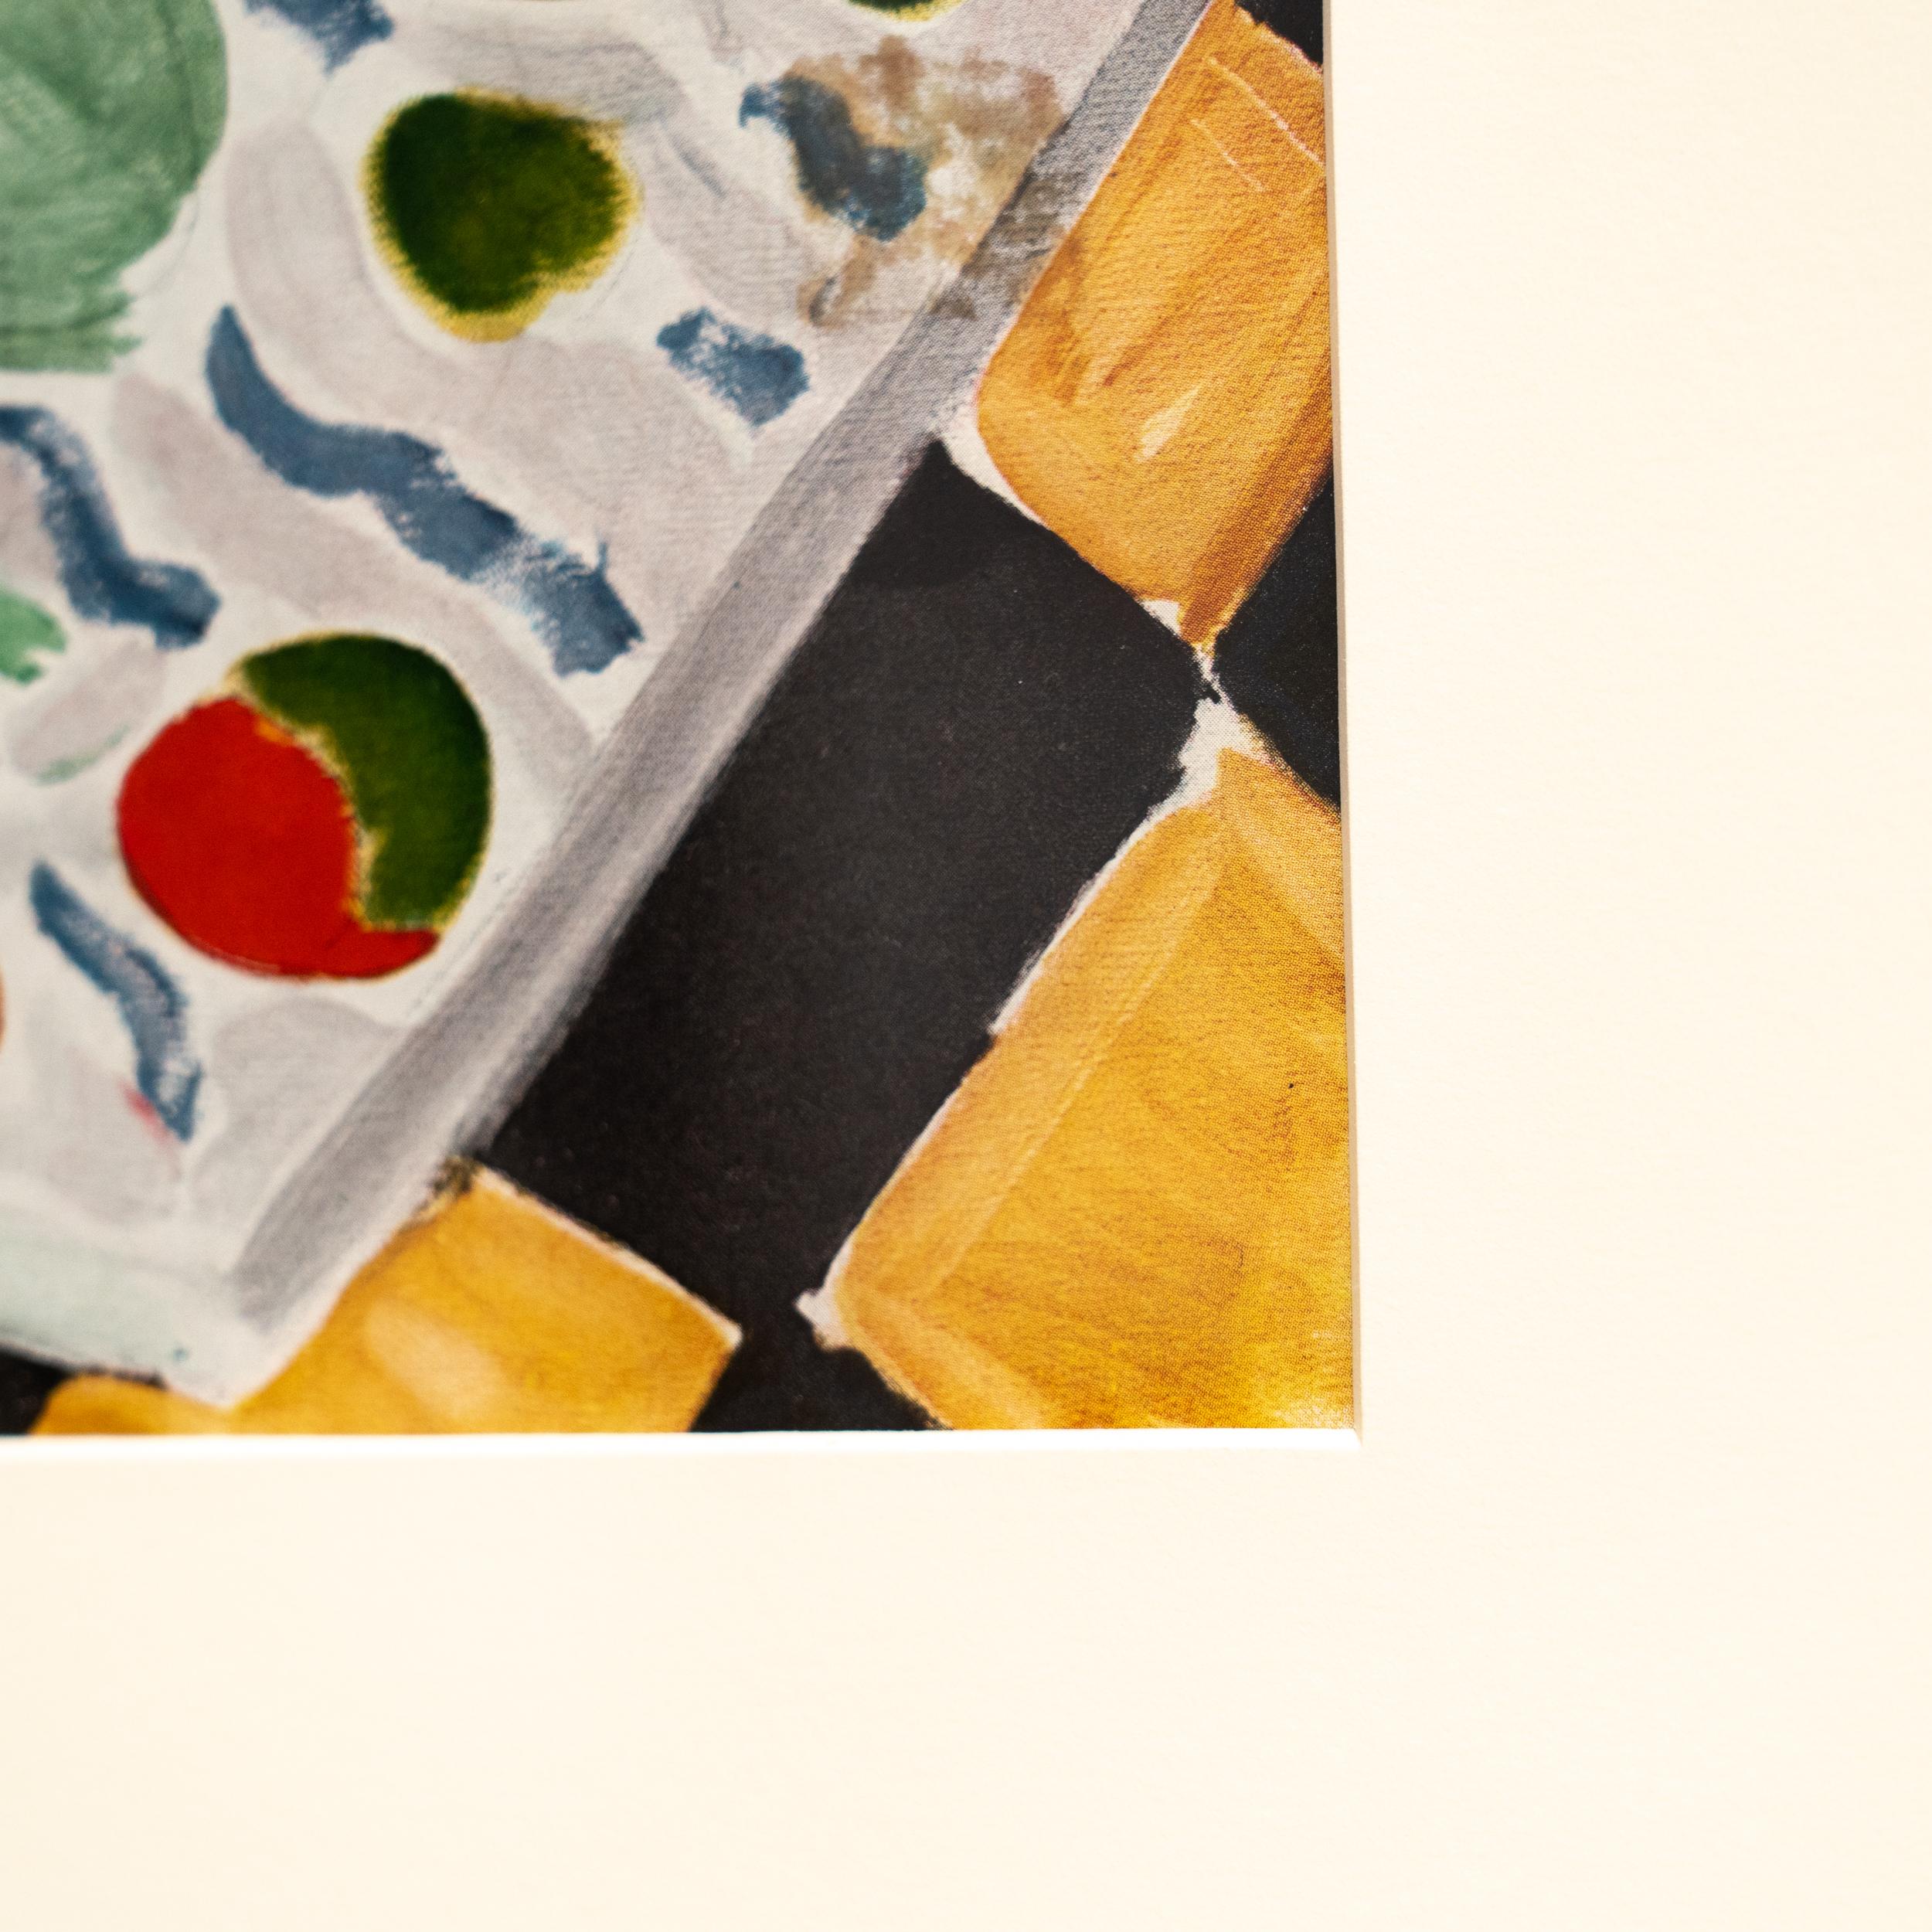 Rare Color Lithograph: A Glimpse into Matisse's Artistic Mastery For Sale 3